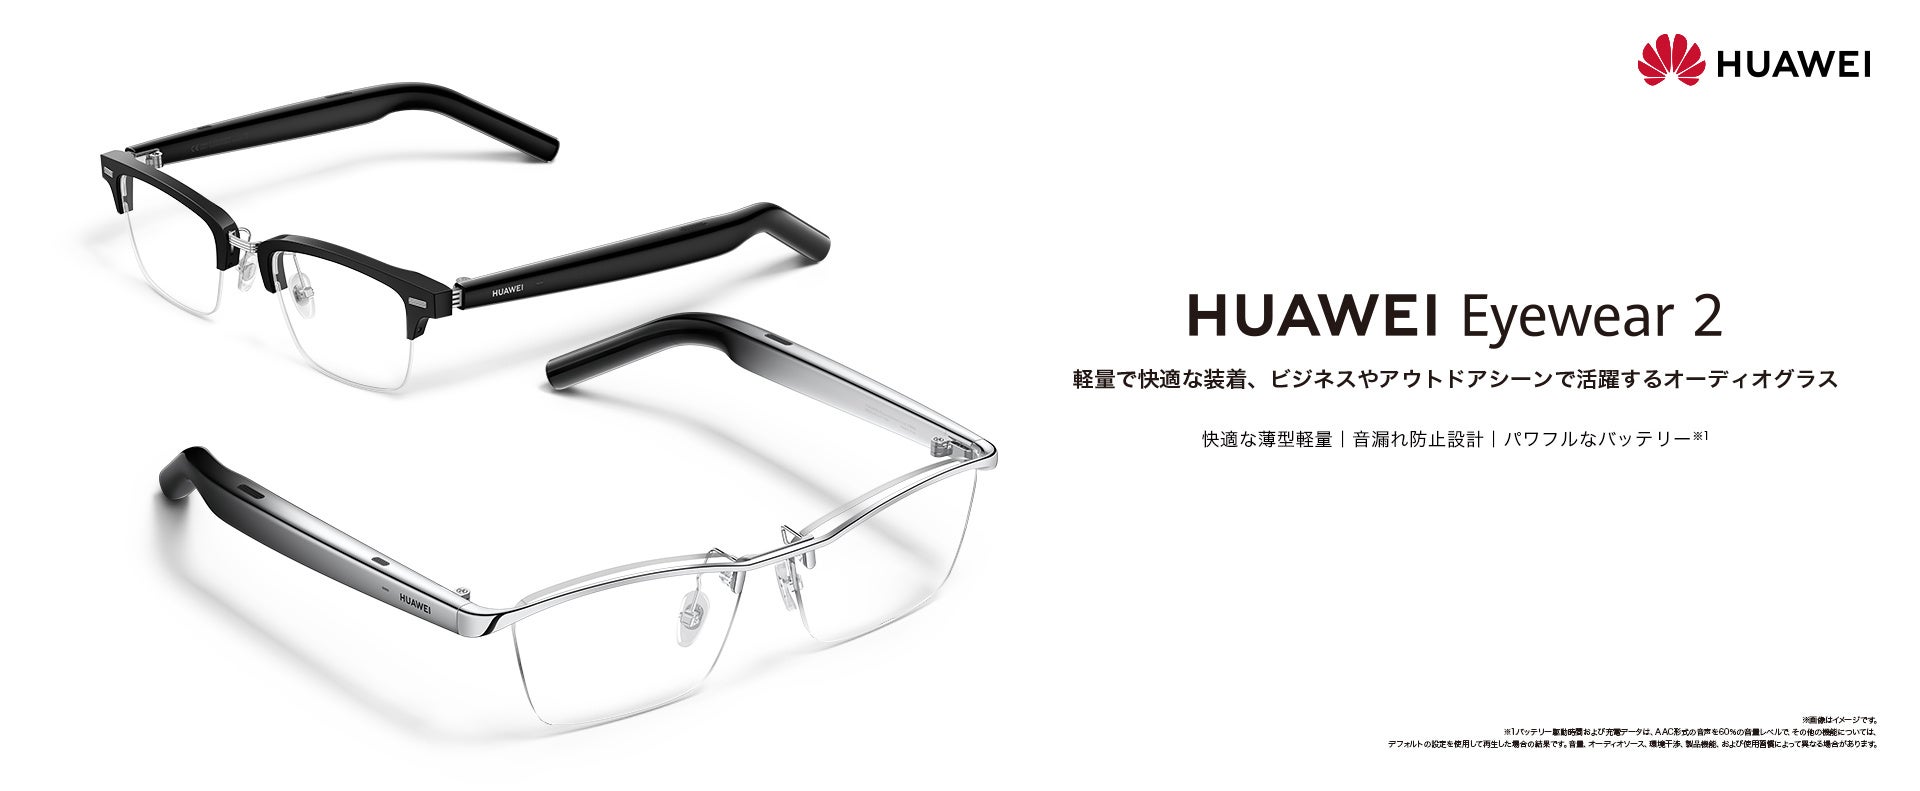 軽量で快適な装着感を実現！ビジネスやアウトドアシーンで活躍するオーディオグラス「HUAWEI Eyewear 2」 11月24日(金）より発売